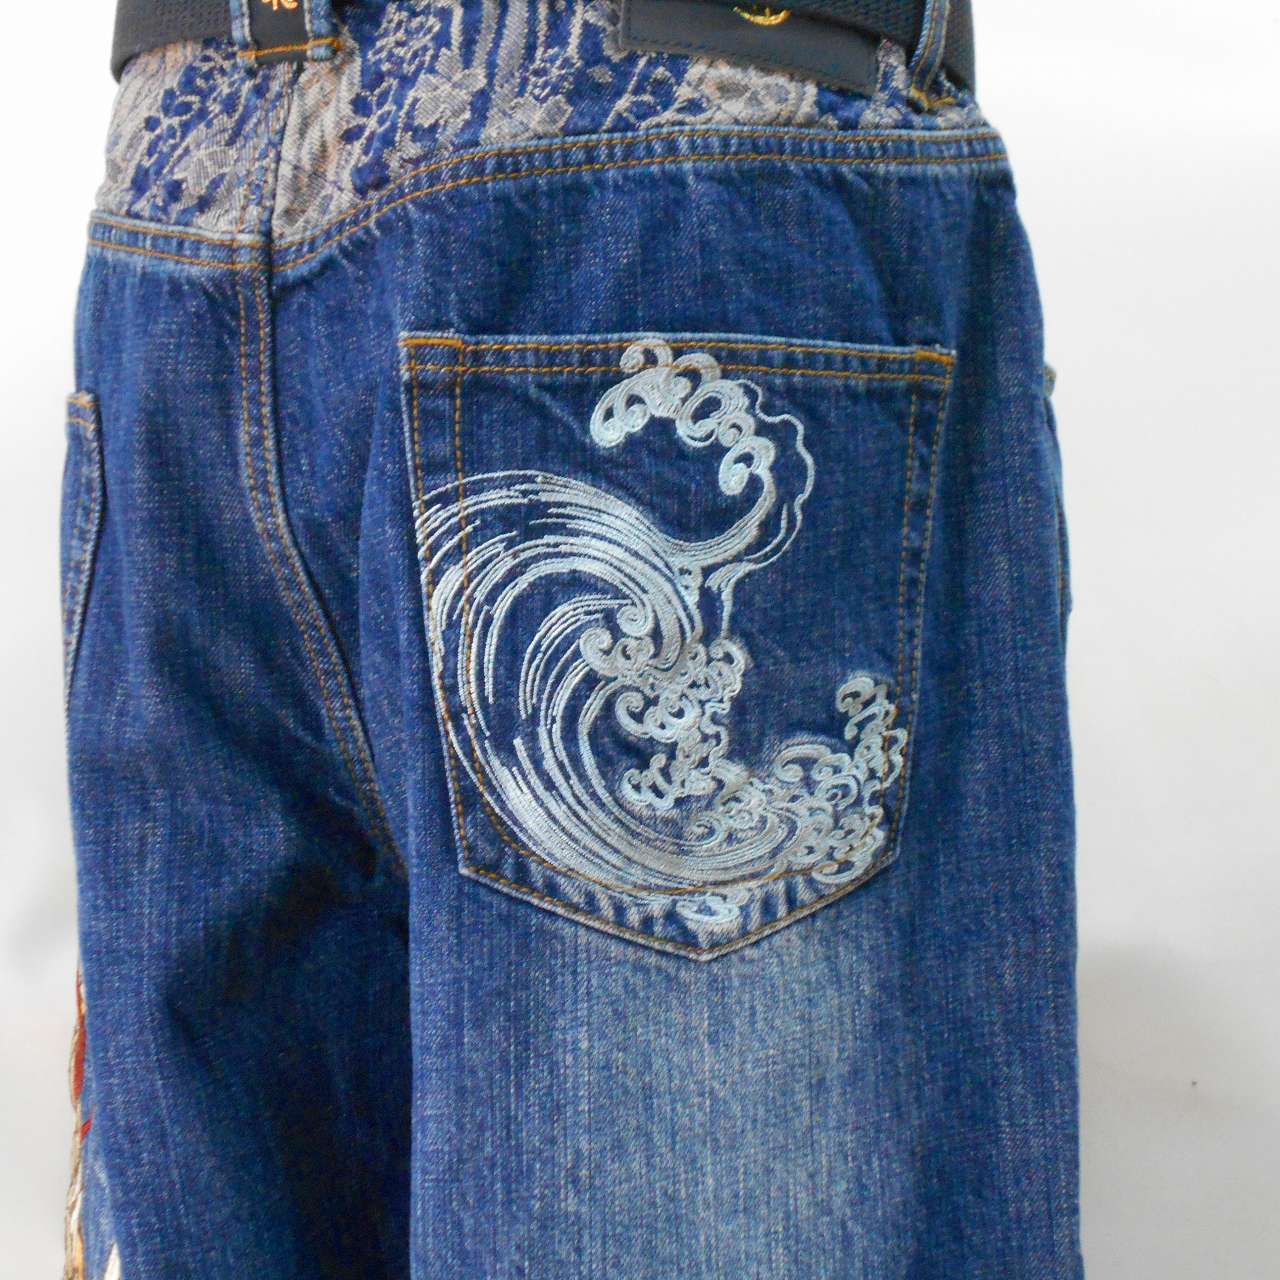 和柄刺繍デニムパンツ 金の龍 Denim pants with Japanese pattern ...